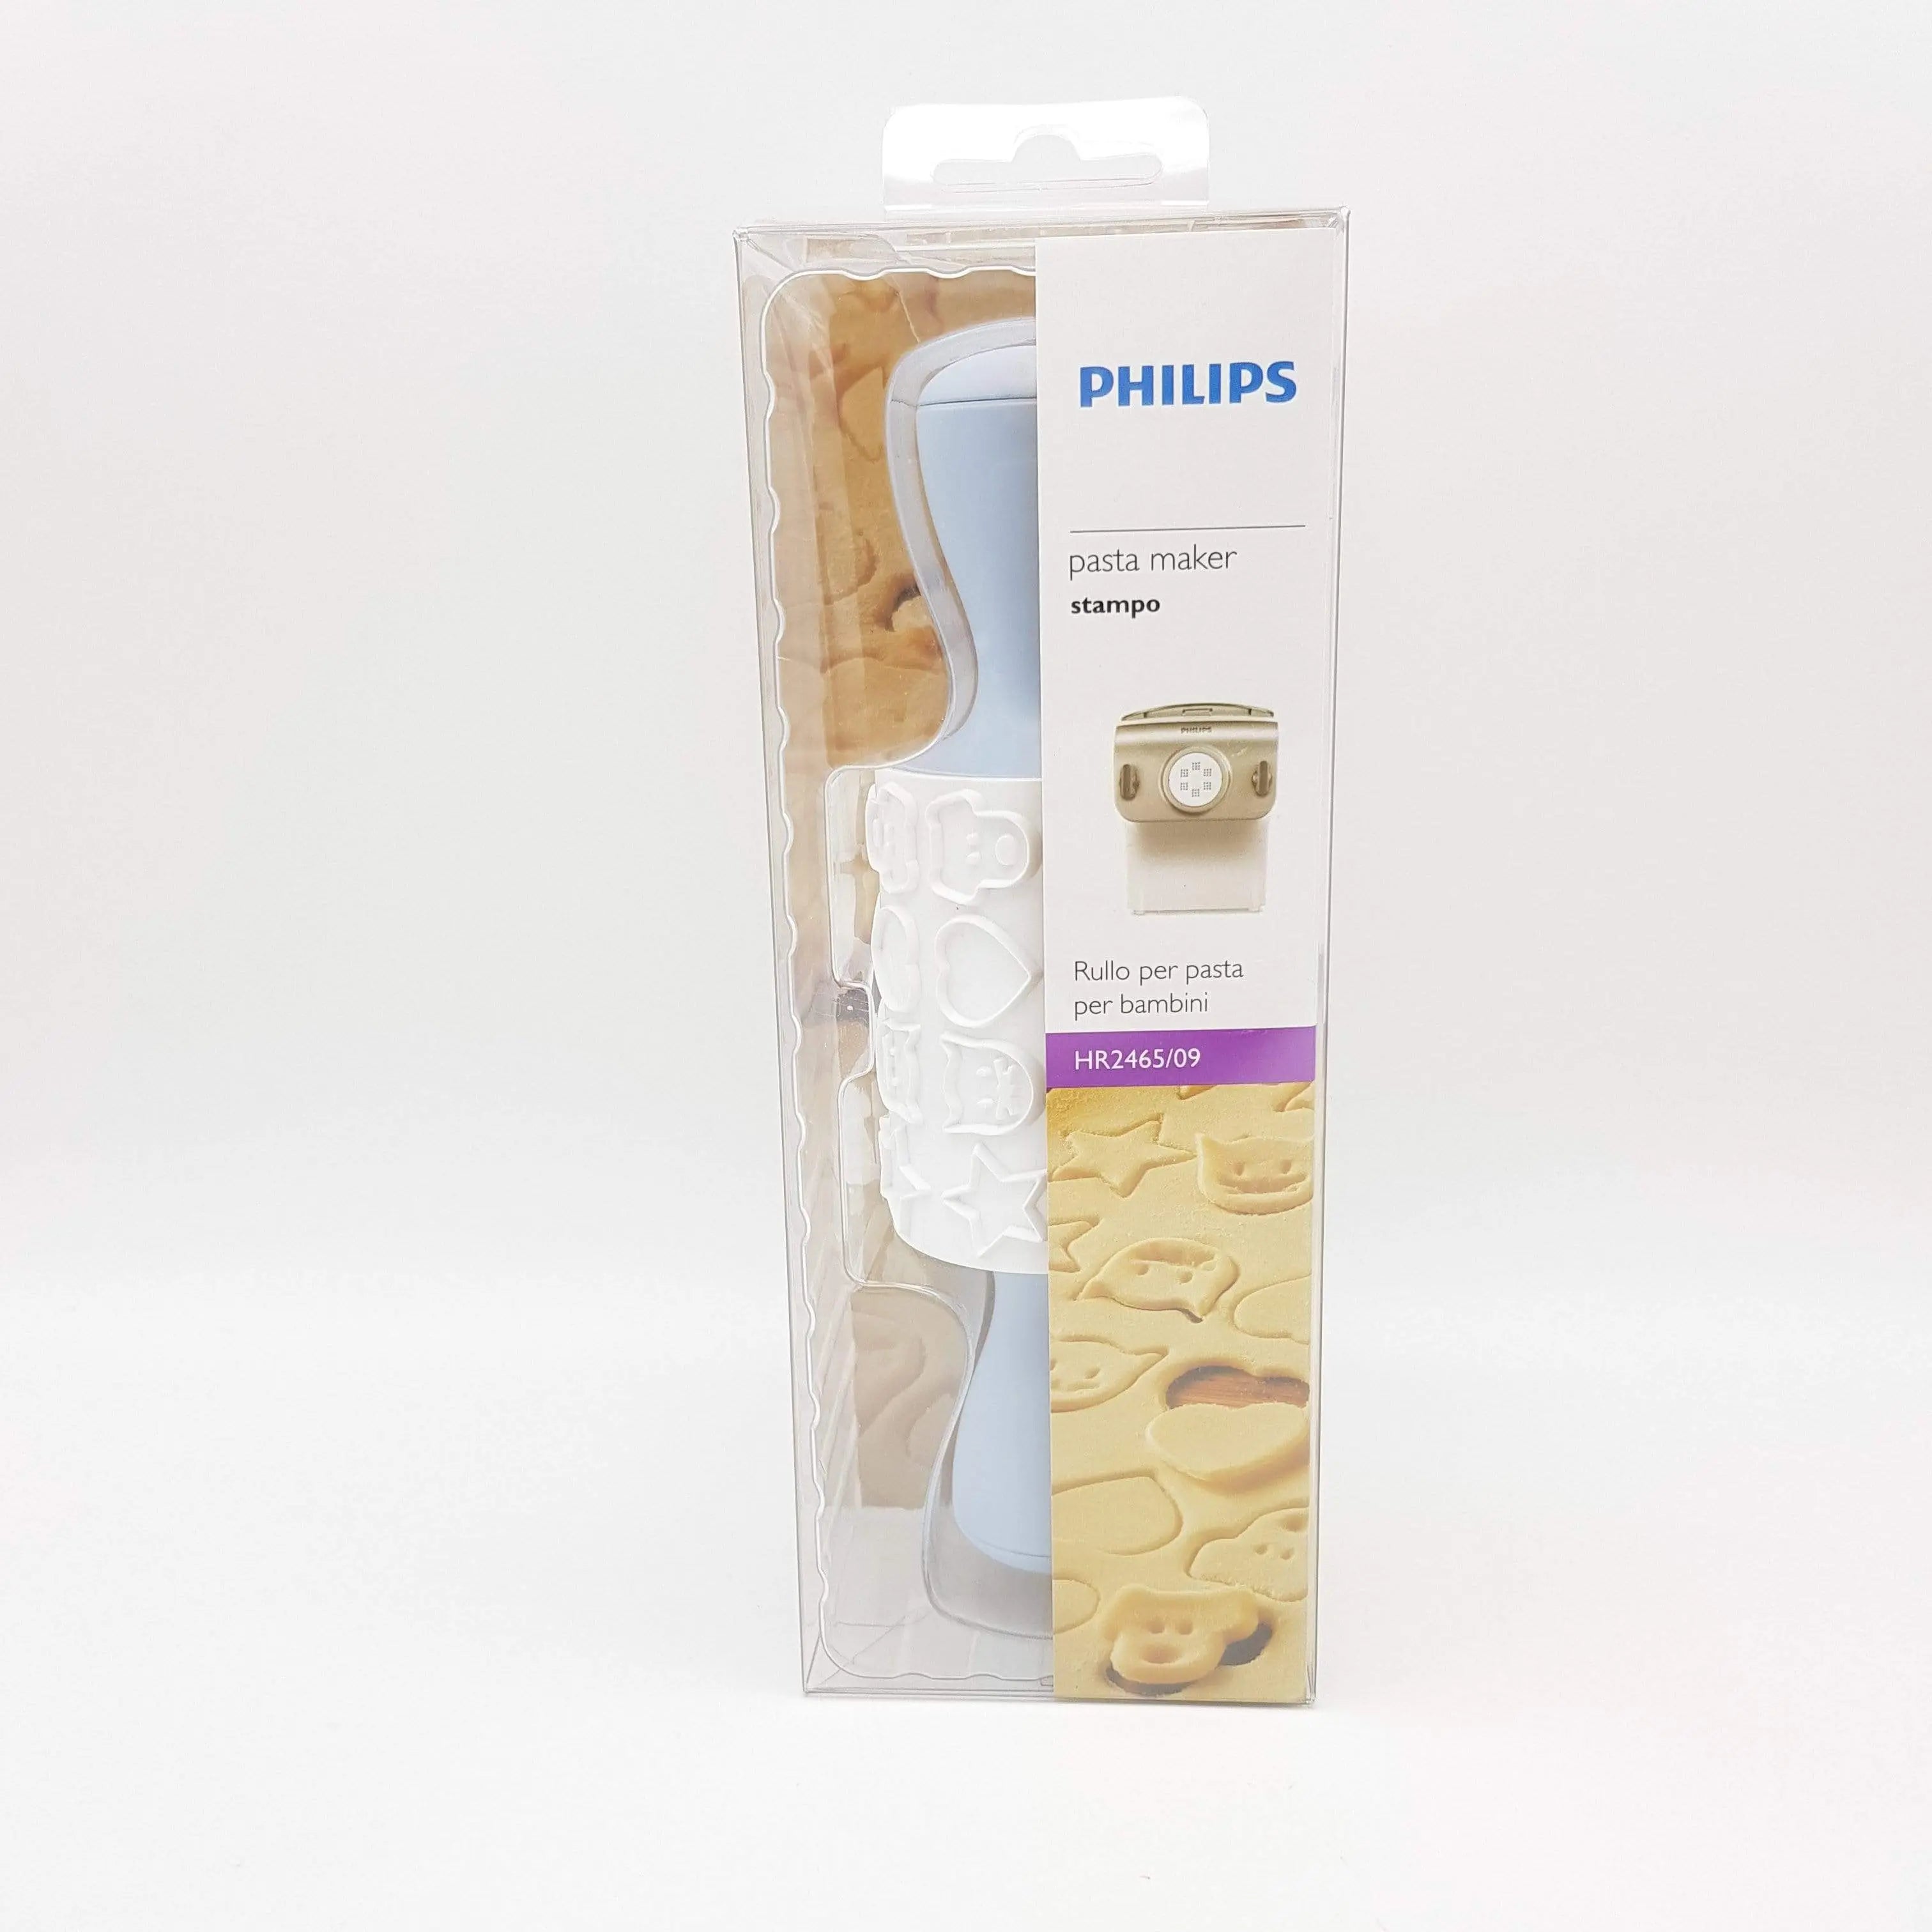 Accessorio rullo per pasta per bambini per pastamaker Philips Avance collection PHILIPS